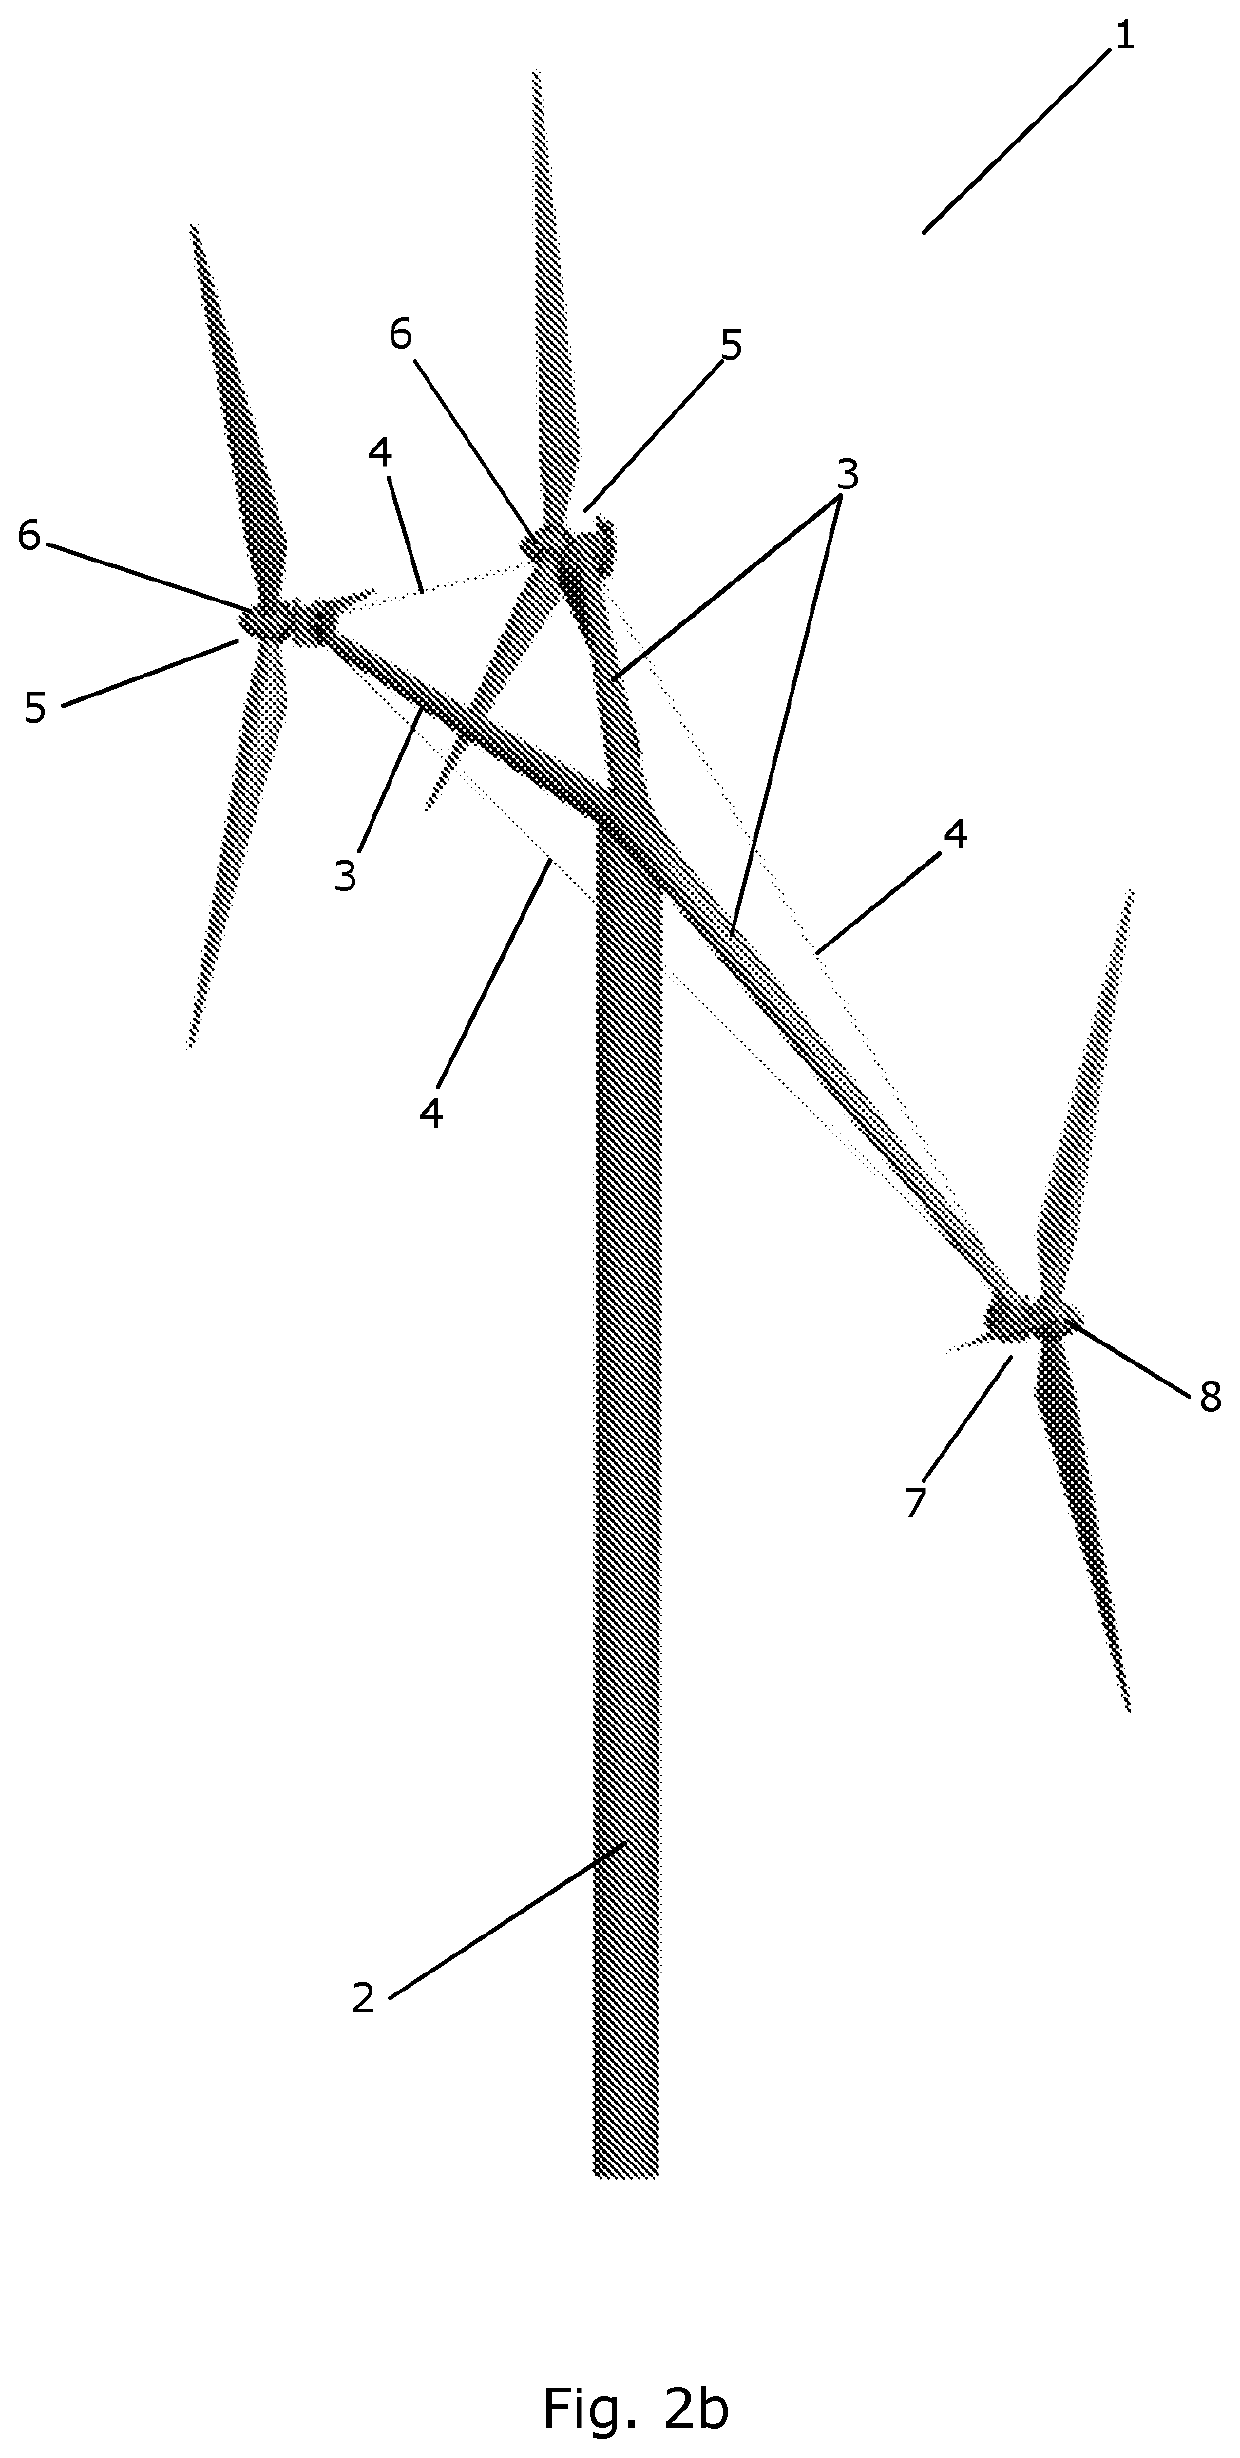 Multirotor wind turbine